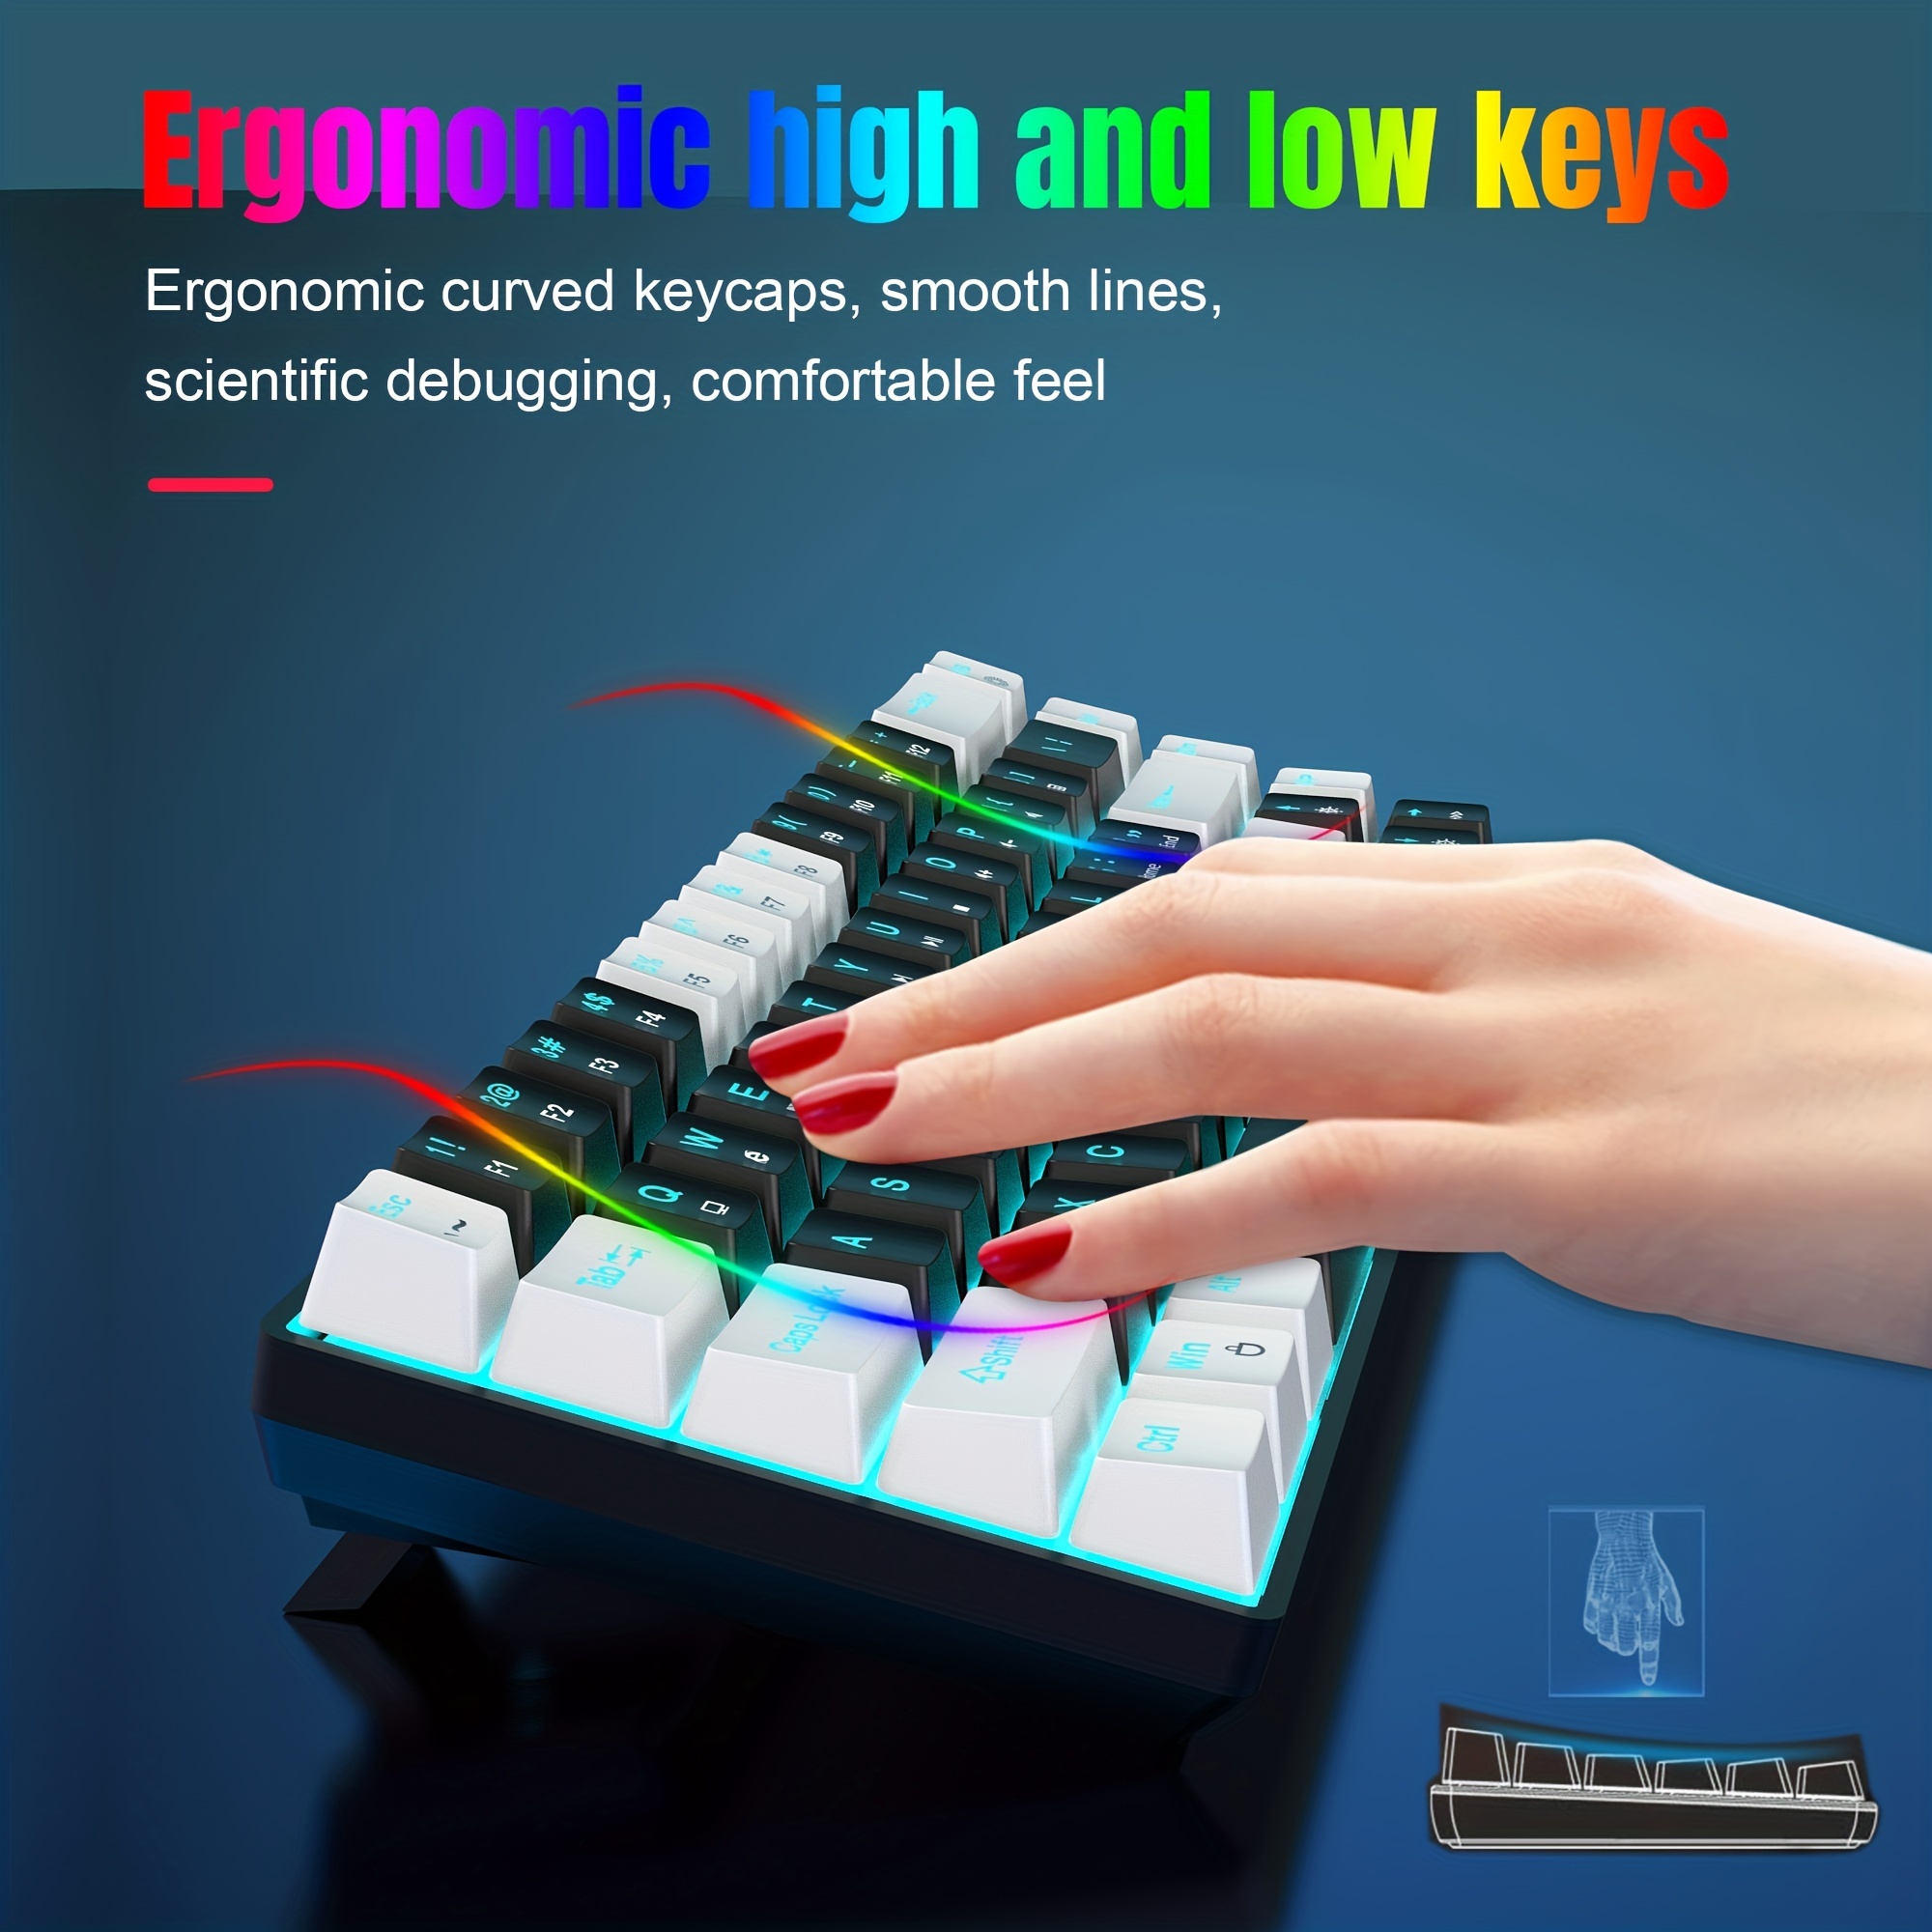 KopJippom Grand clavier rétroéclairé USB silencieux avec LED blanche  compatible avec Windows, Mac OS, ordinateur de bureau, ordinateur portable,  PC, jeu, noir : : Informatique